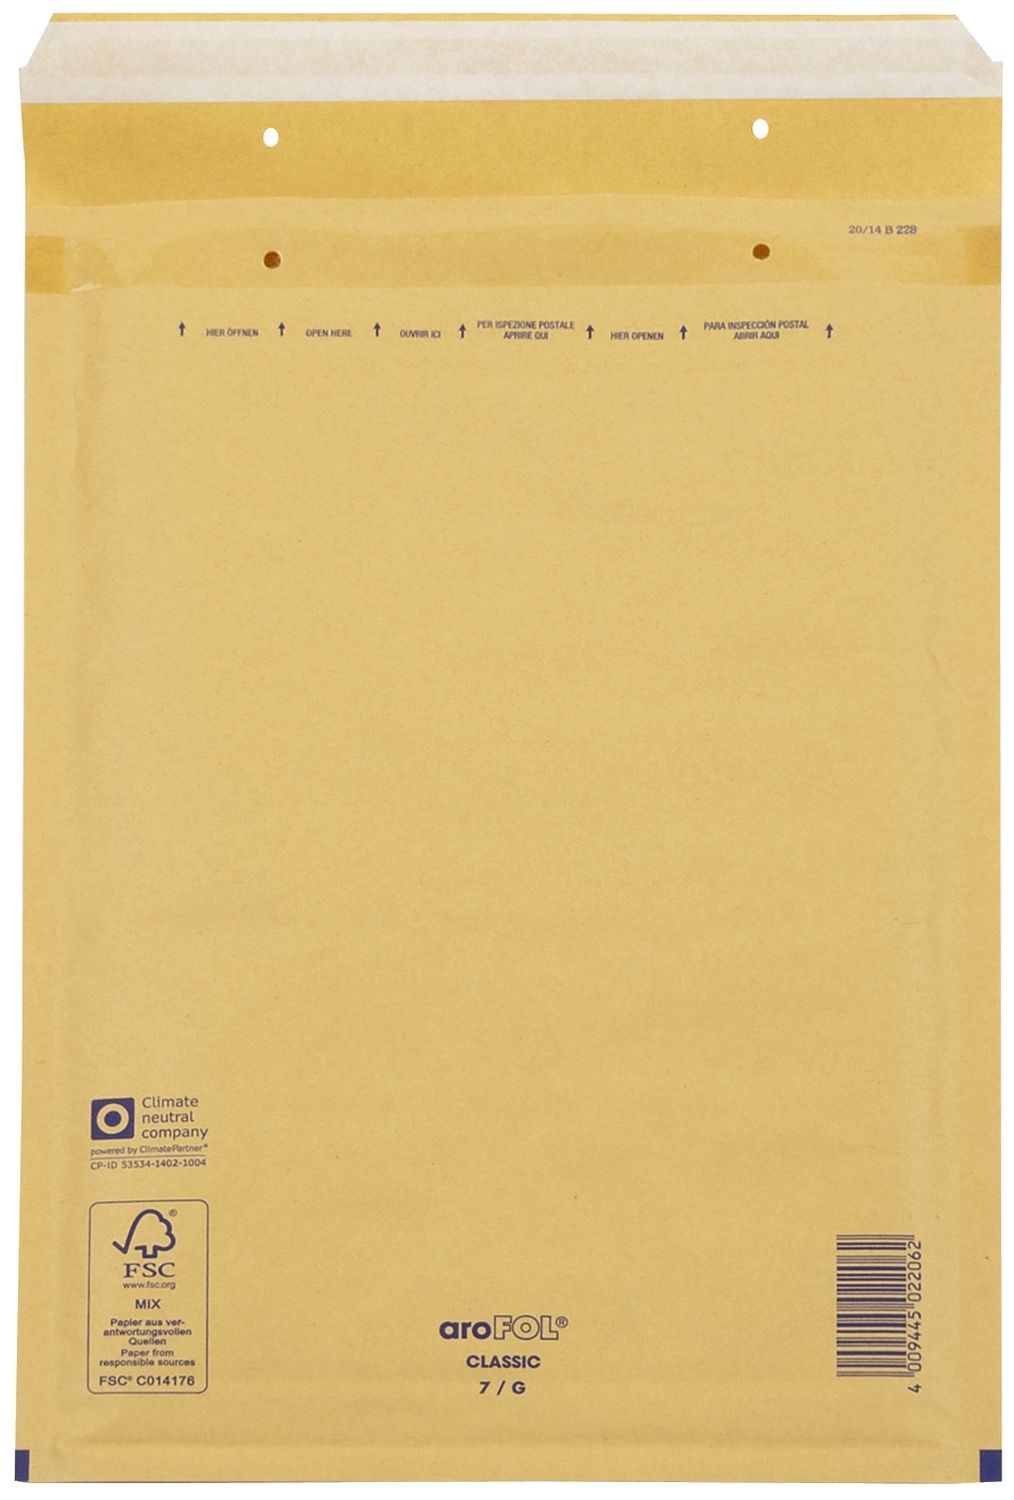 Luftpolstertaschen Nr. 7, 230x340 mm, goldgelb/braun, 100 Stück